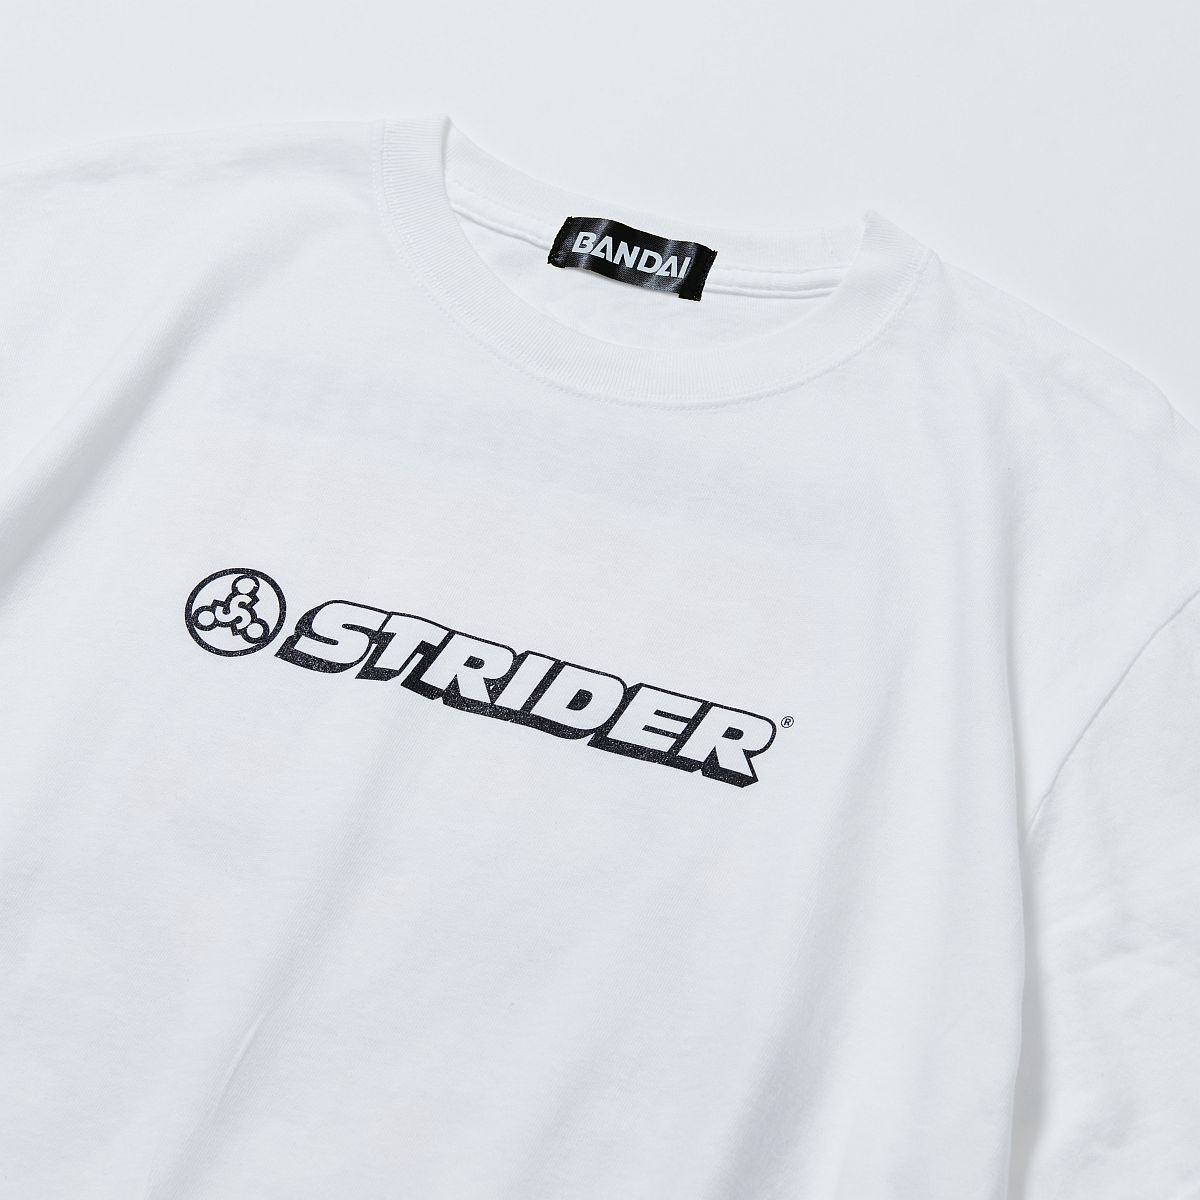 仮面ライダーギーツ×STRIDER Tシャツ C | 仮面ライダーシリーズ